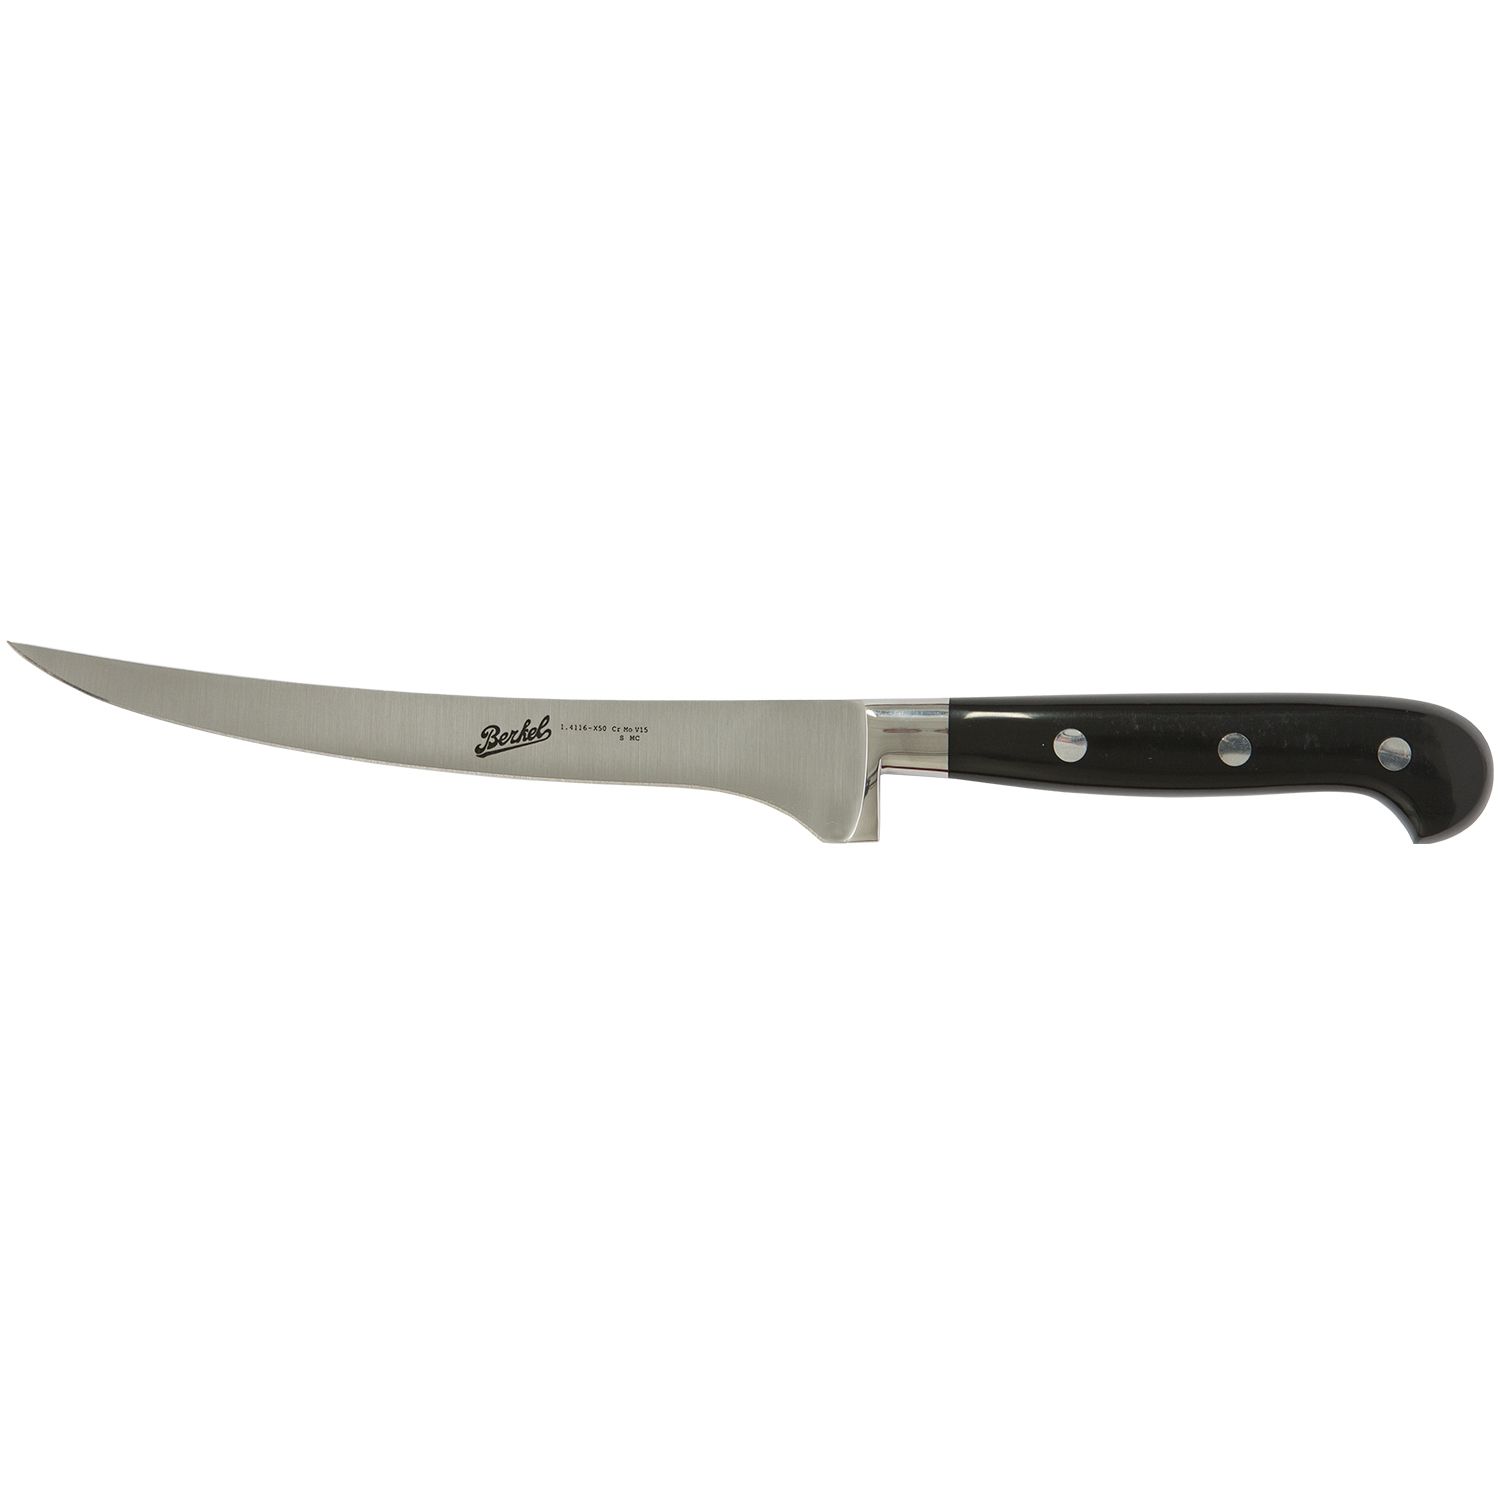 Fillet knife cm.18 Stainless Steel Berkel Adhoc Handle Glossy